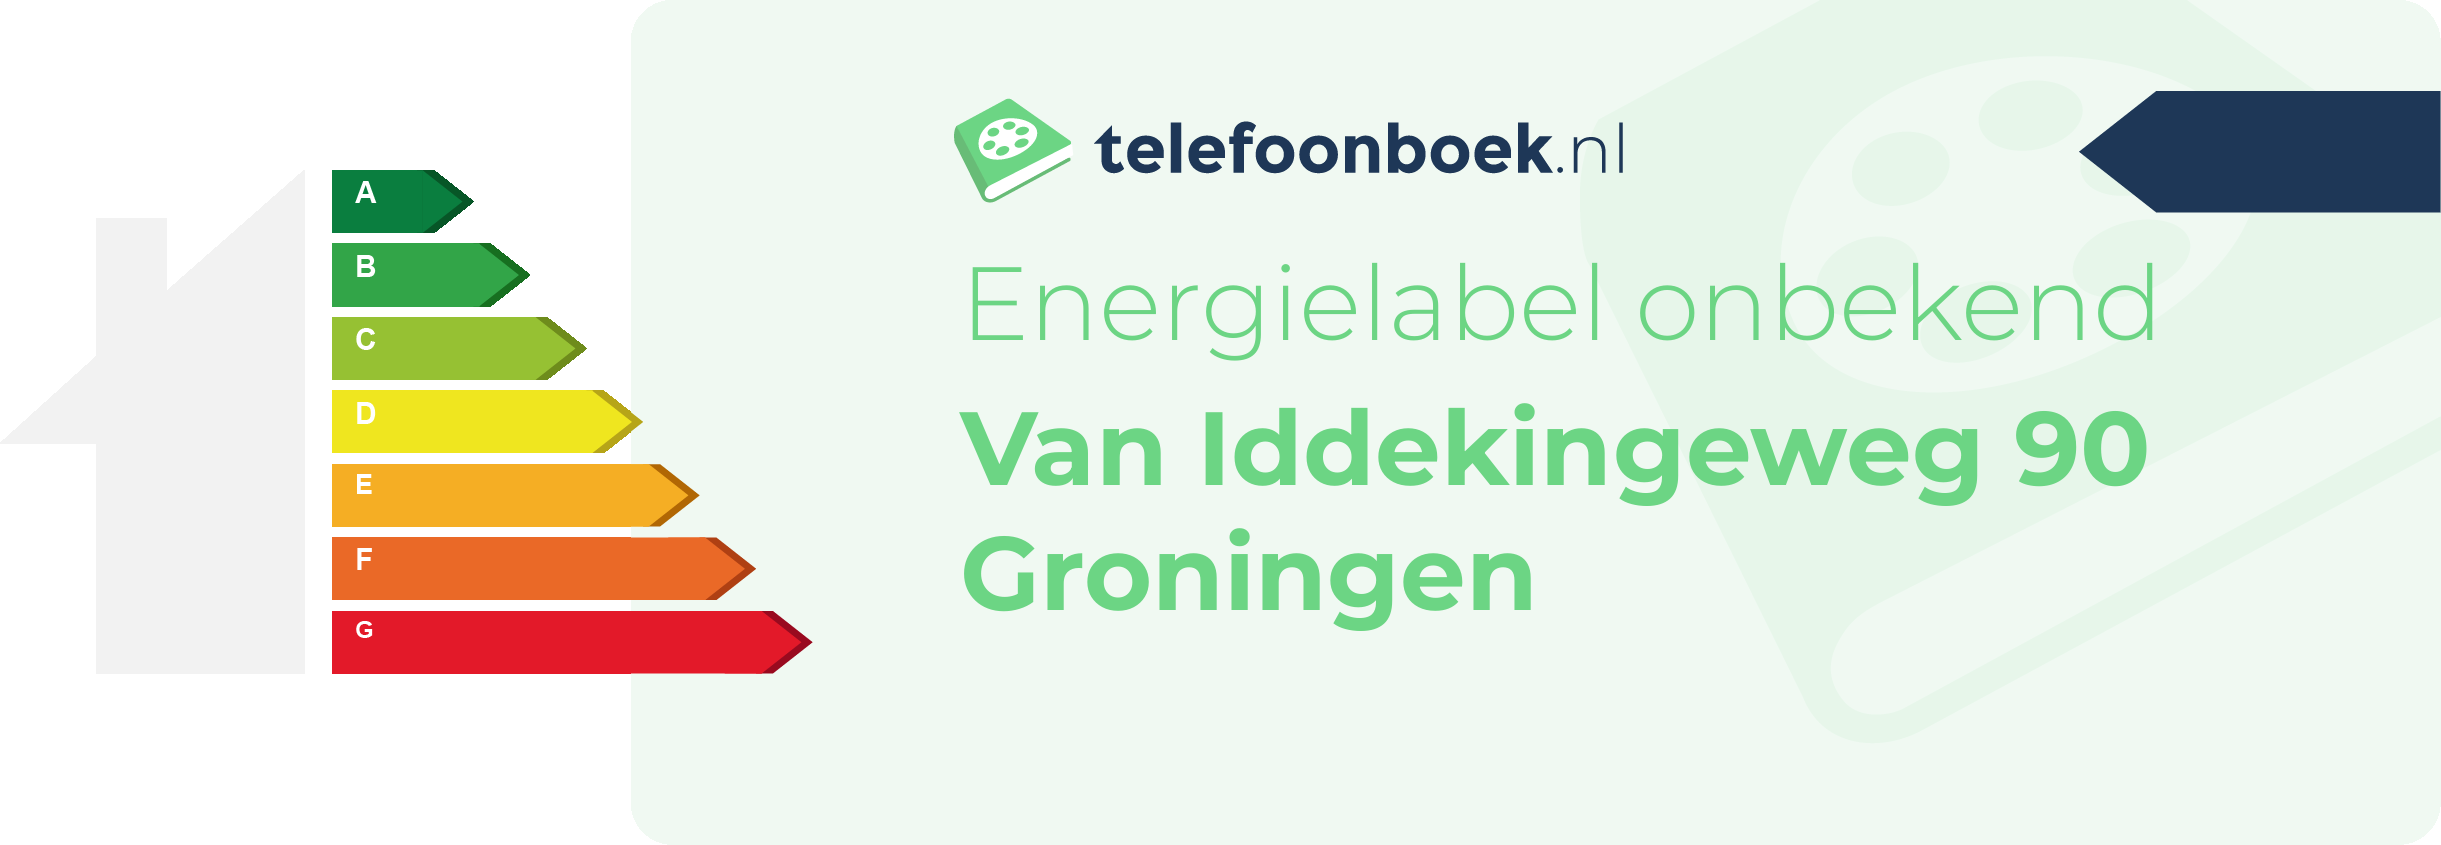 Energielabel Van Iddekingeweg 90 Groningen